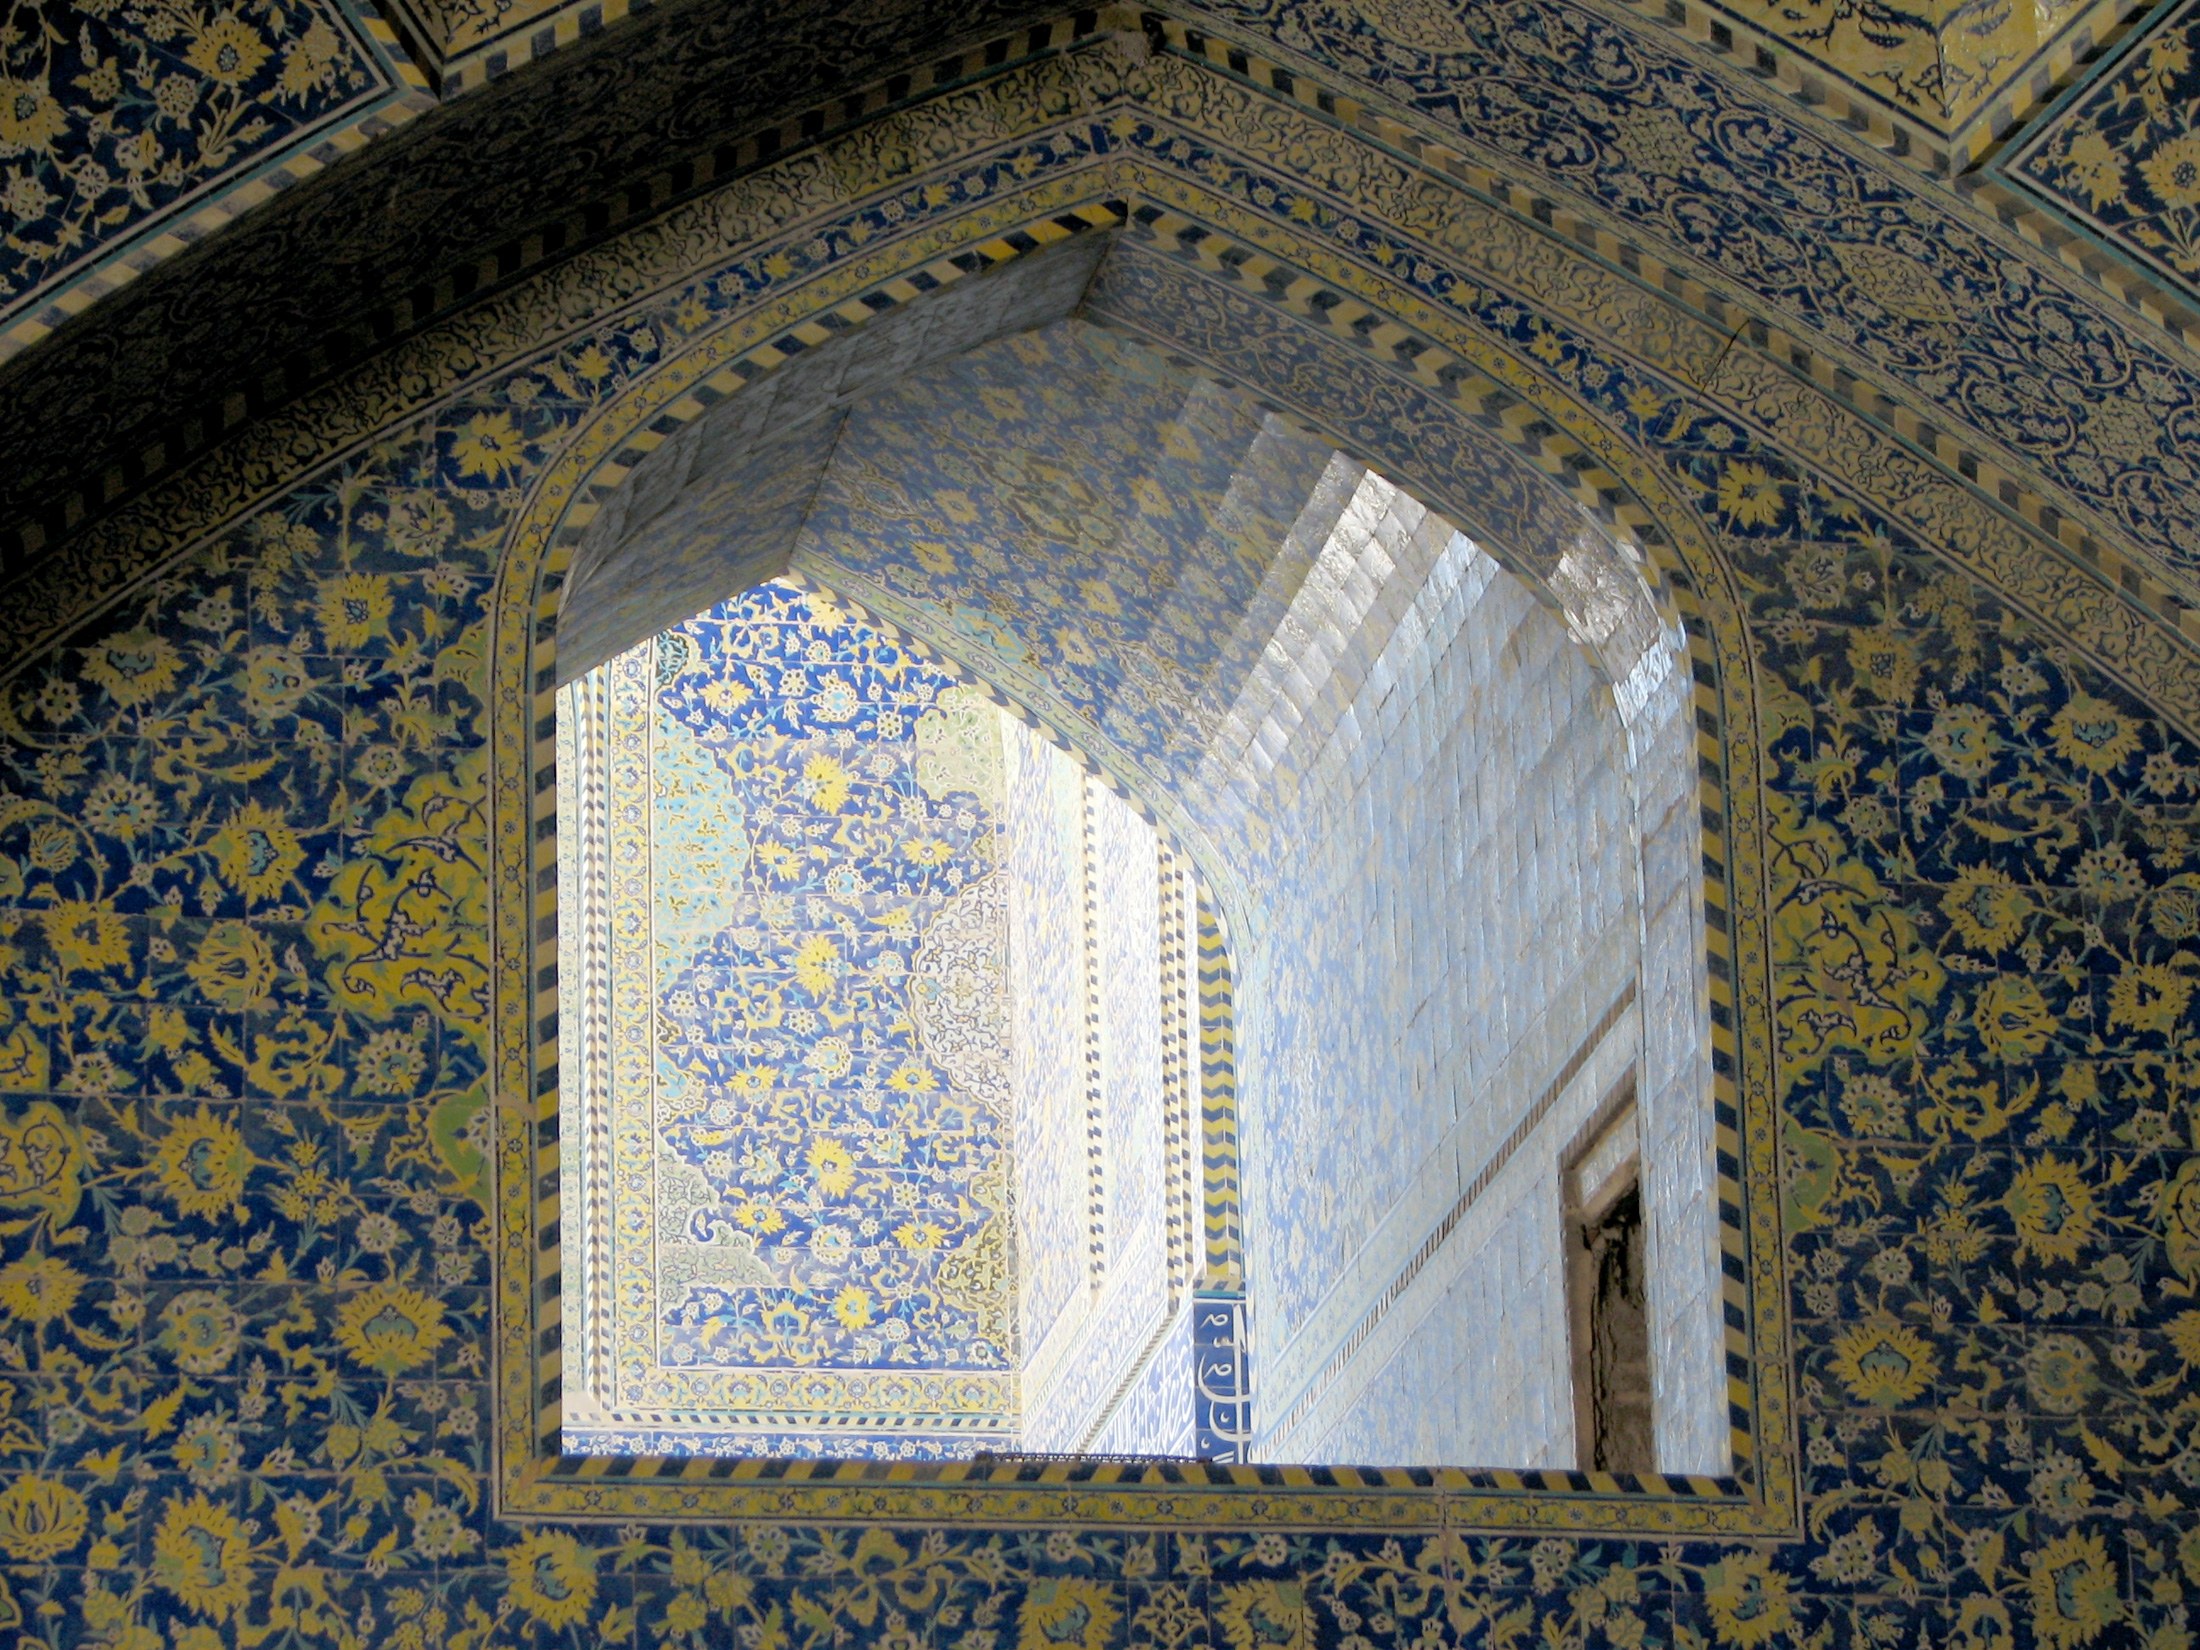 Esfahan or Isfahan